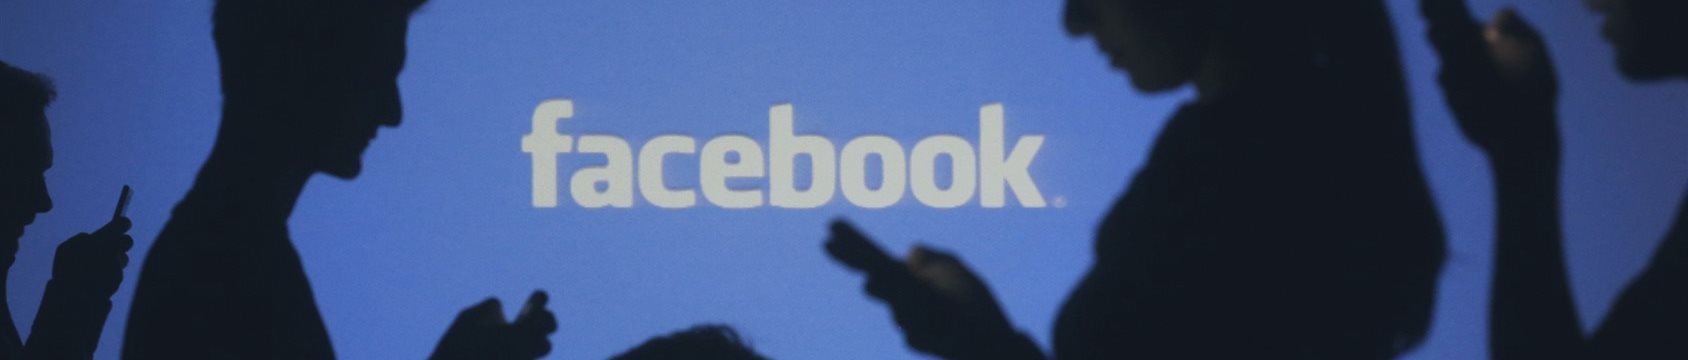 Сдержанные прогнозы экспертов о стоимости акций Facebook